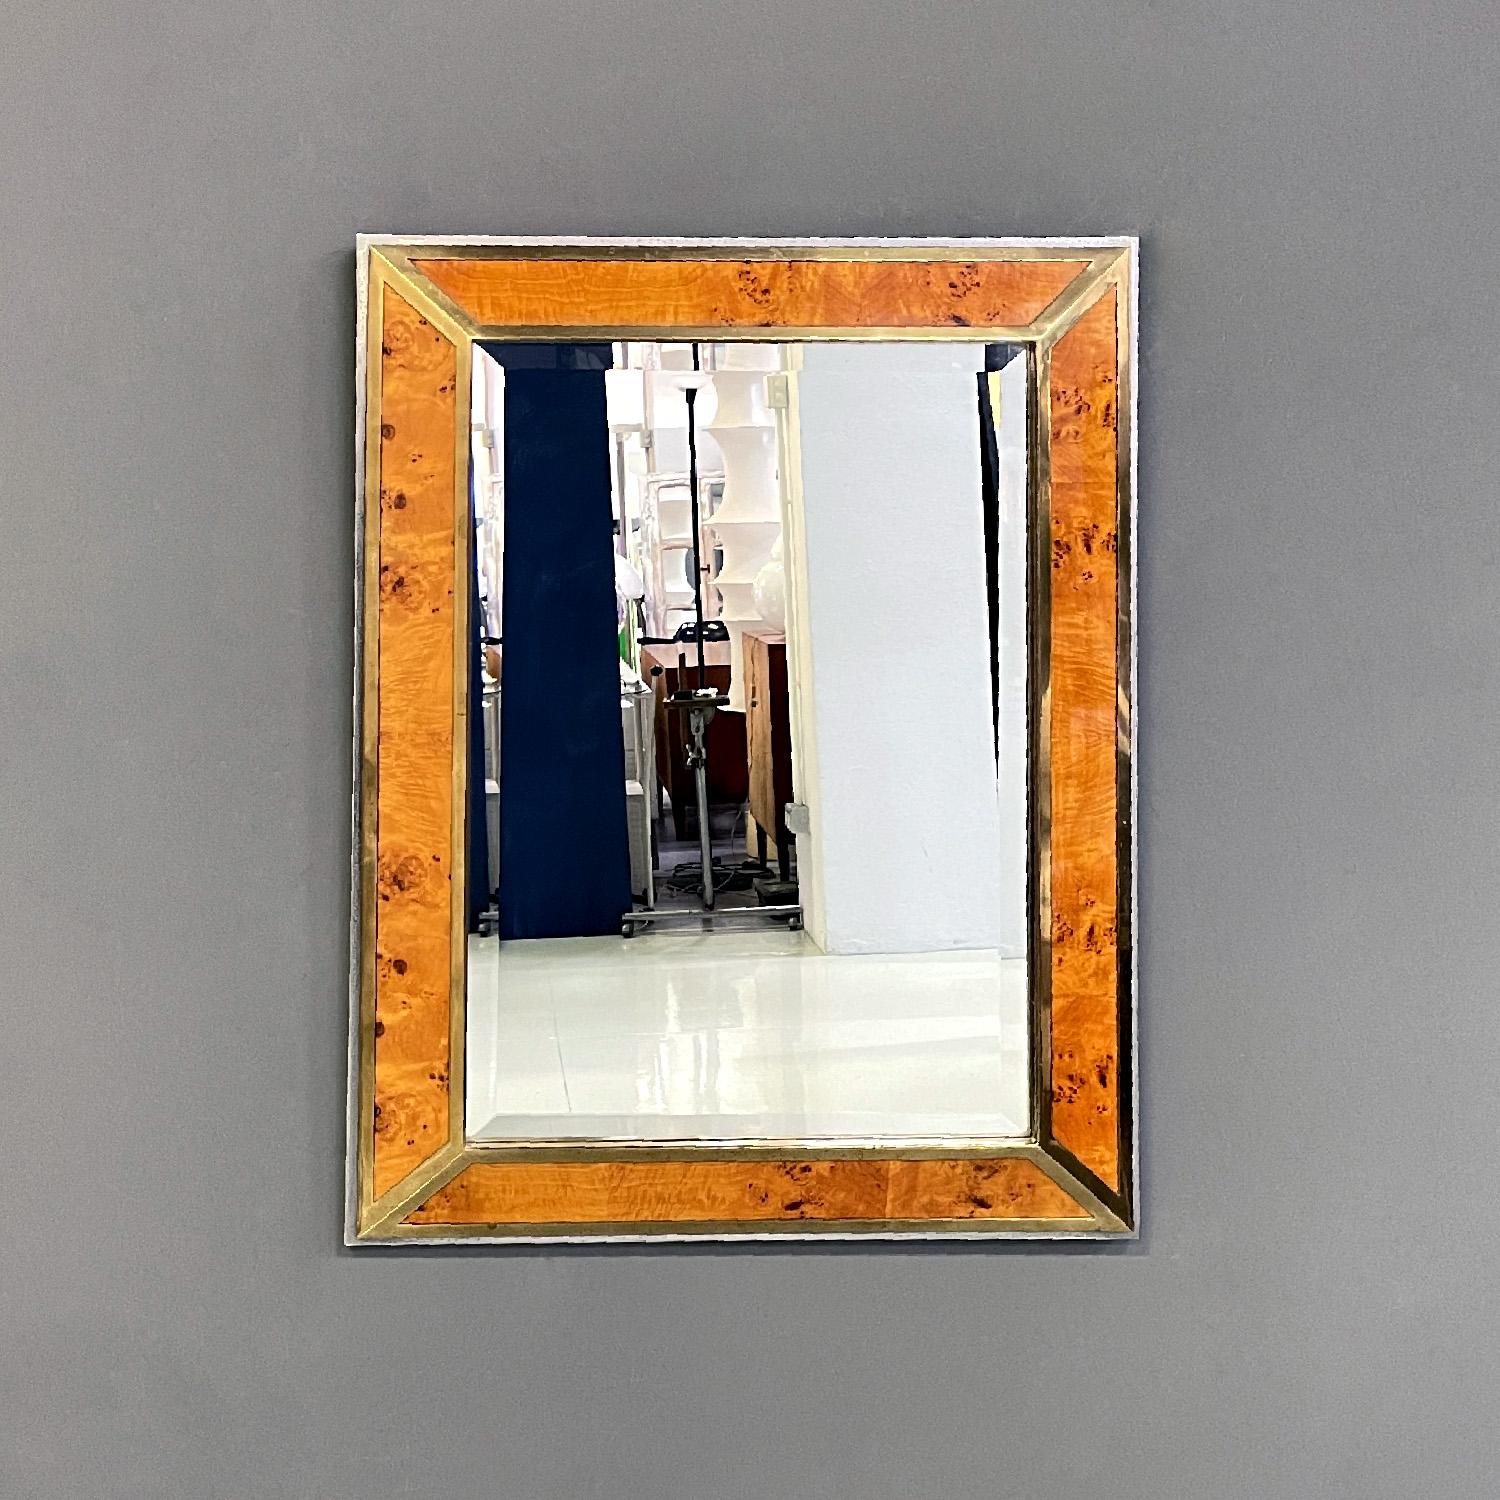 Italienischer moderner Wandspiegel aus Messing und verchromtem Metall von D.I.D., 1980er Jahre
Rechteckiger Wandspiegel. Das Gestell besteht aus vier Teilen aus Bruyèreholz mit Messingprofilen, die auf einem erhöhten verchromten Metallsockel